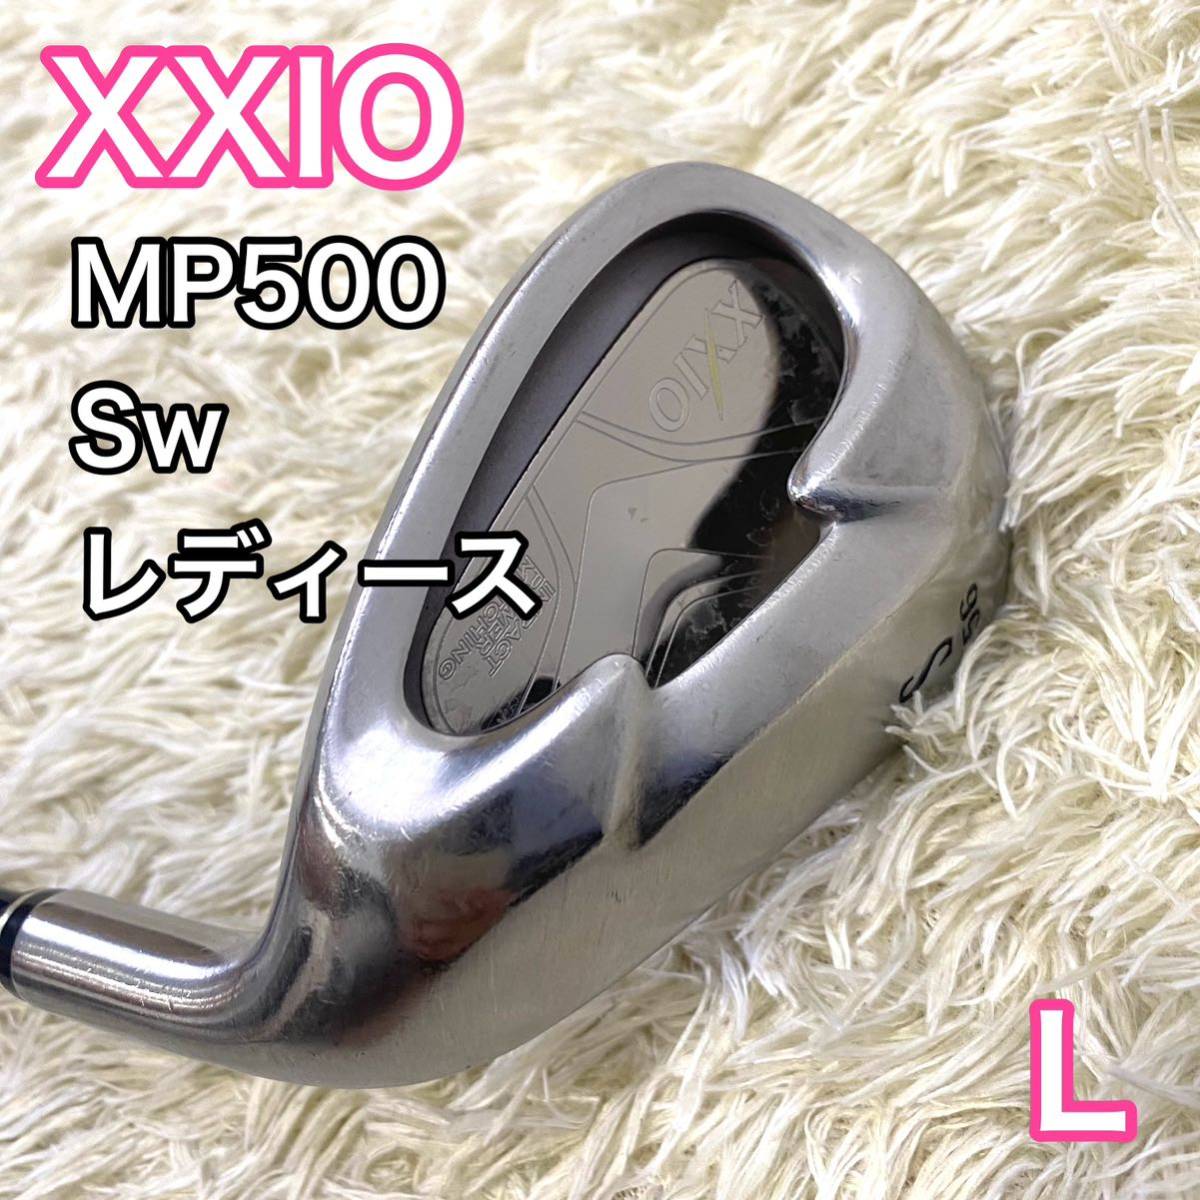 ゼクシオ XXIO5 MP500 Sw サンドウエッジ 右 レディース L｜PayPayフリマ